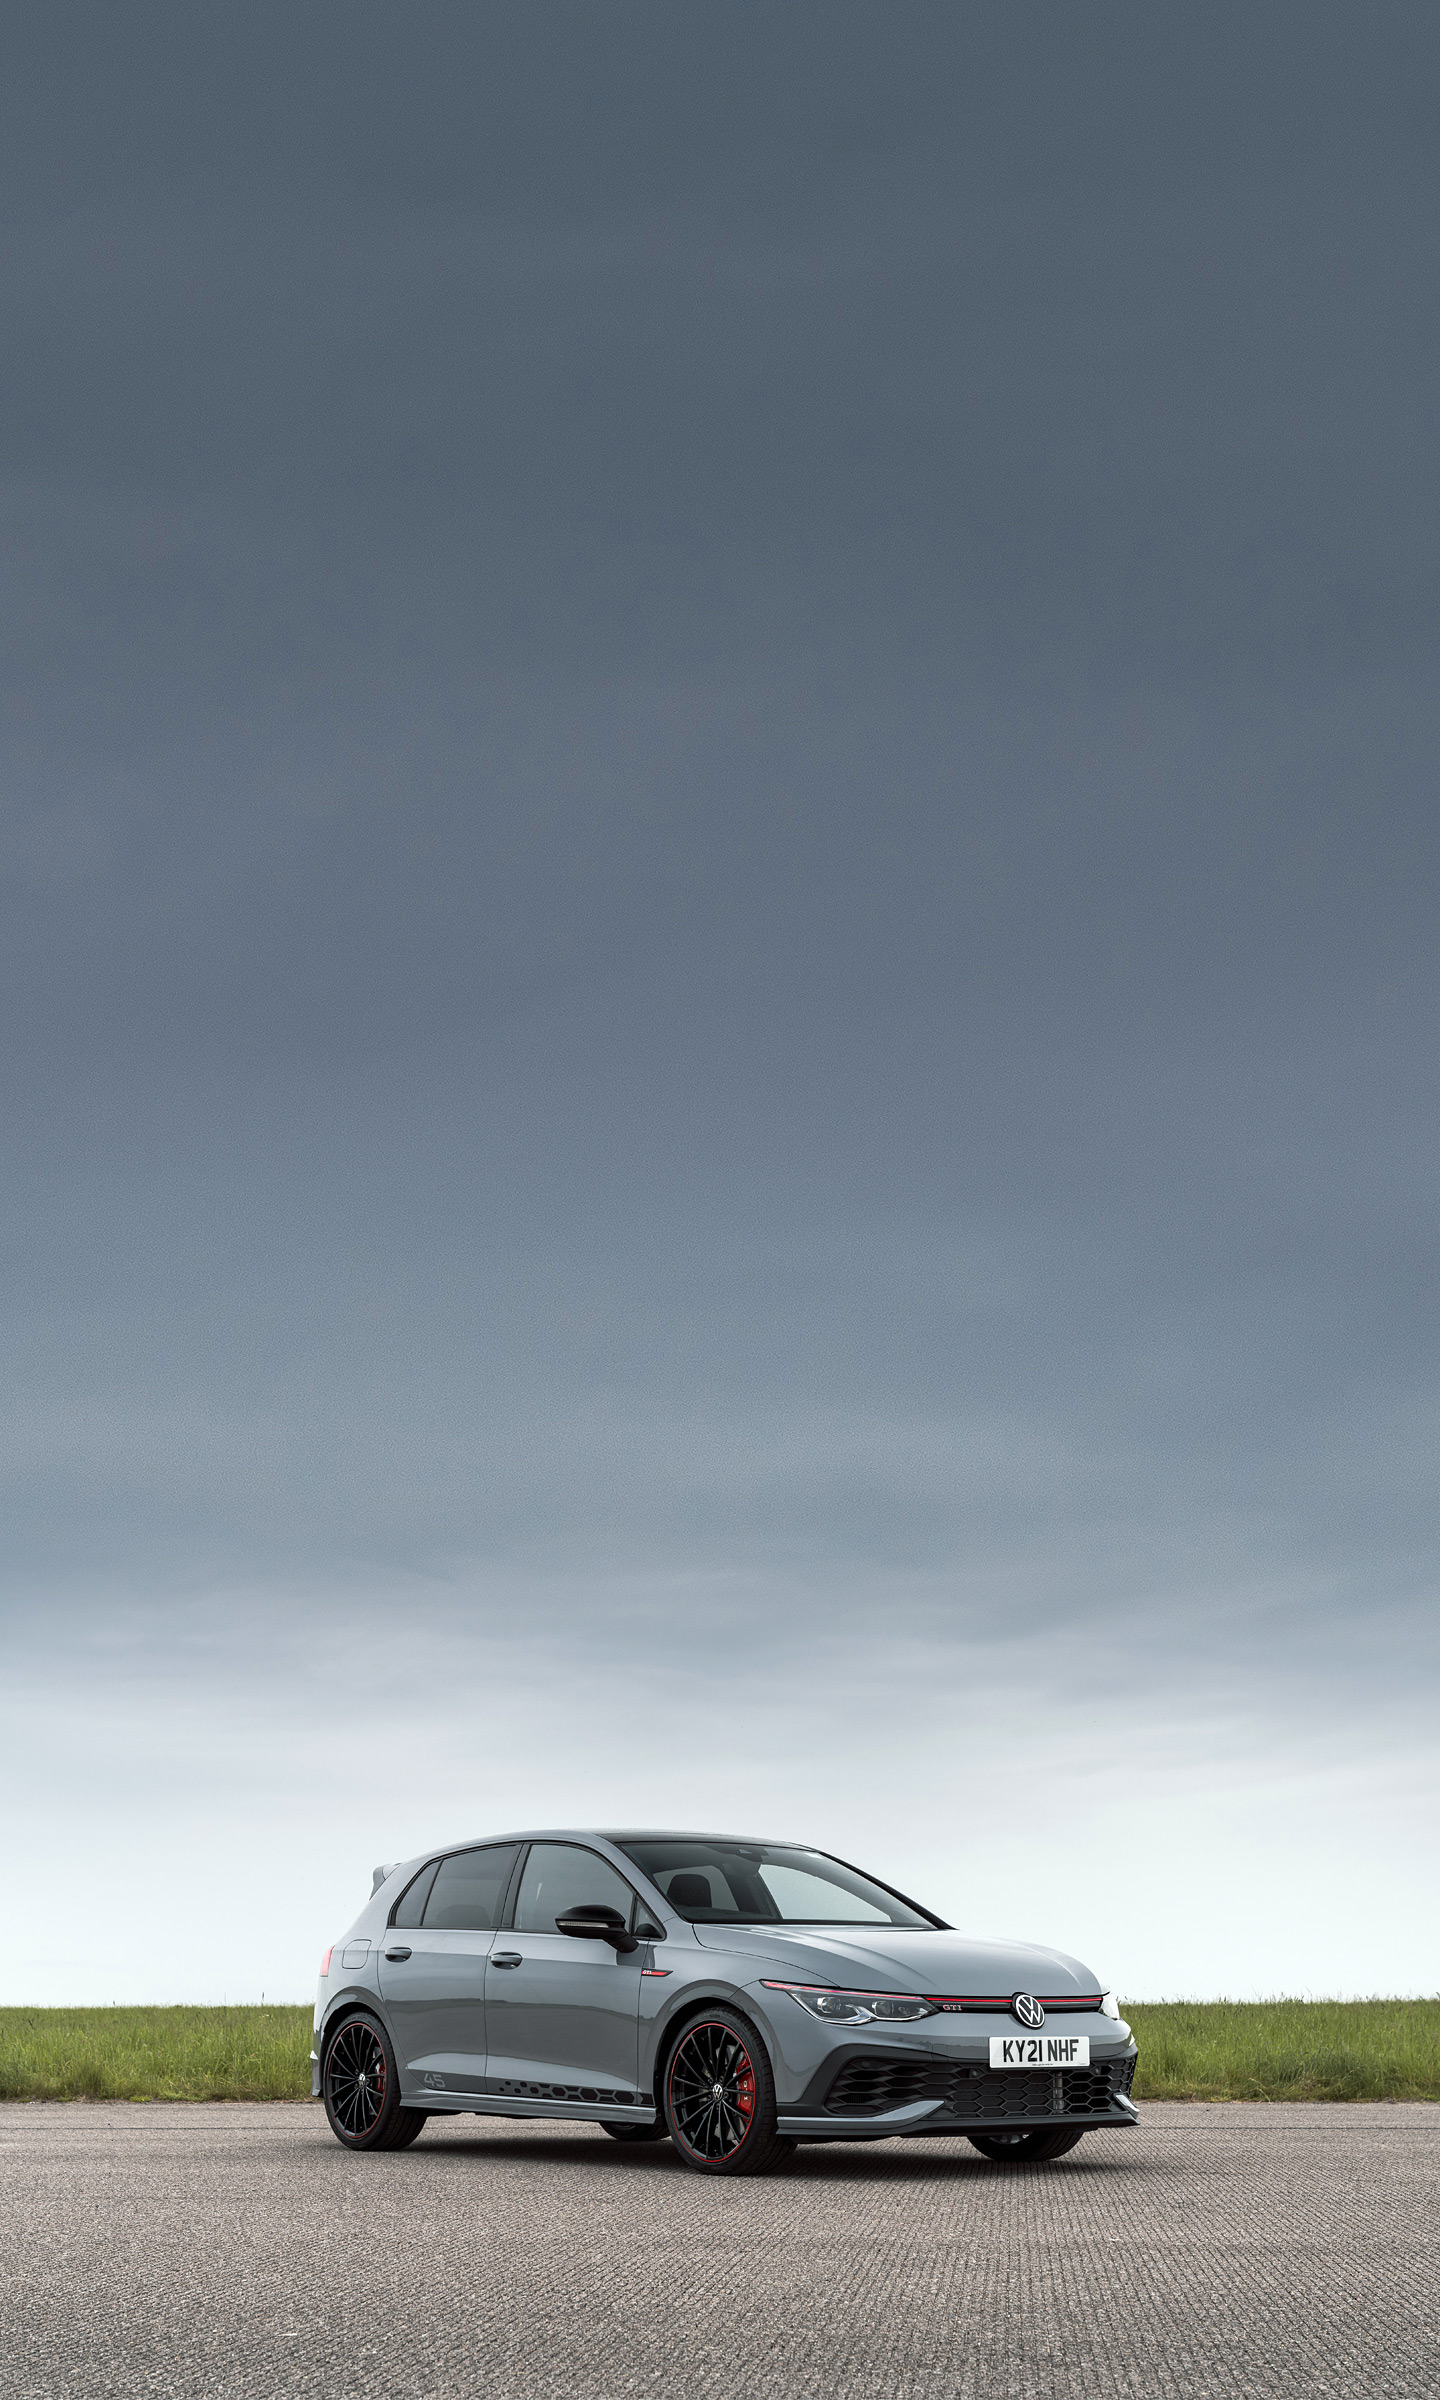  2021 Volkswagen Golf GTI Clubsport 45 Wallpaper.